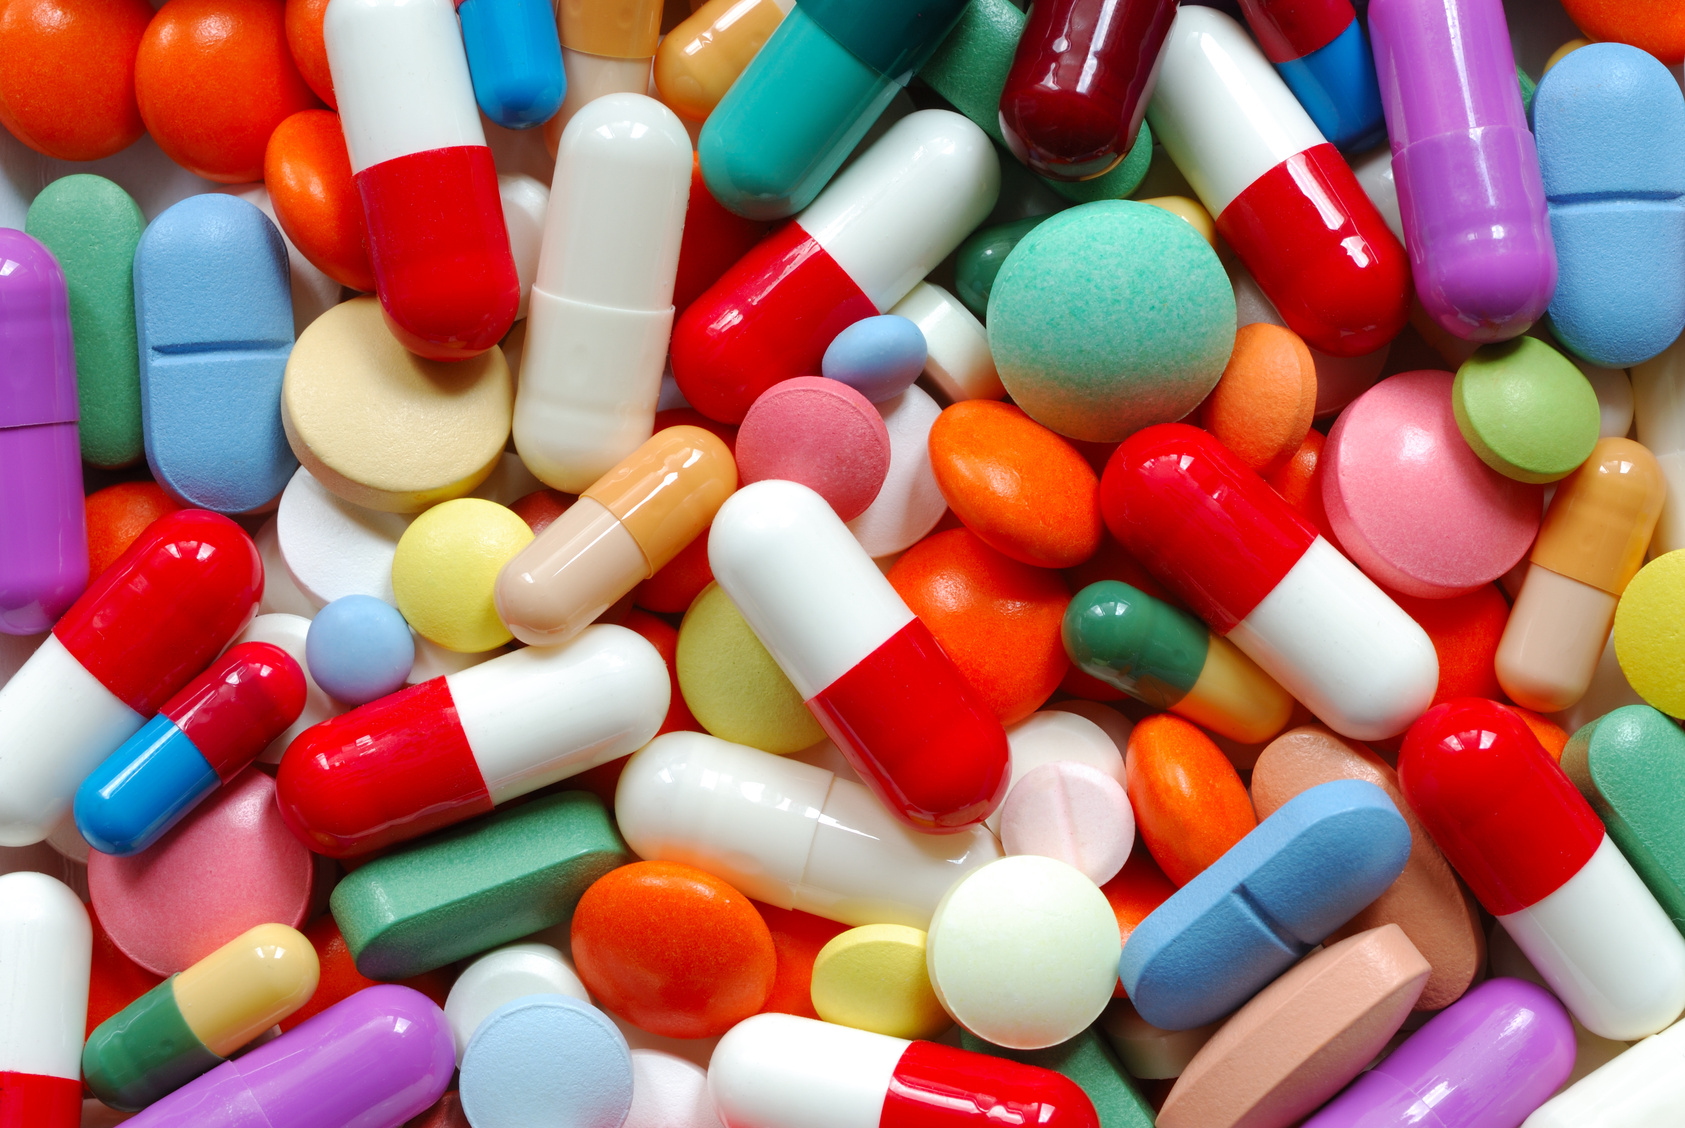 ΙΕΚ ΞΥΝΗ – Αντιβιοτικά και Υπερκατανάλωση